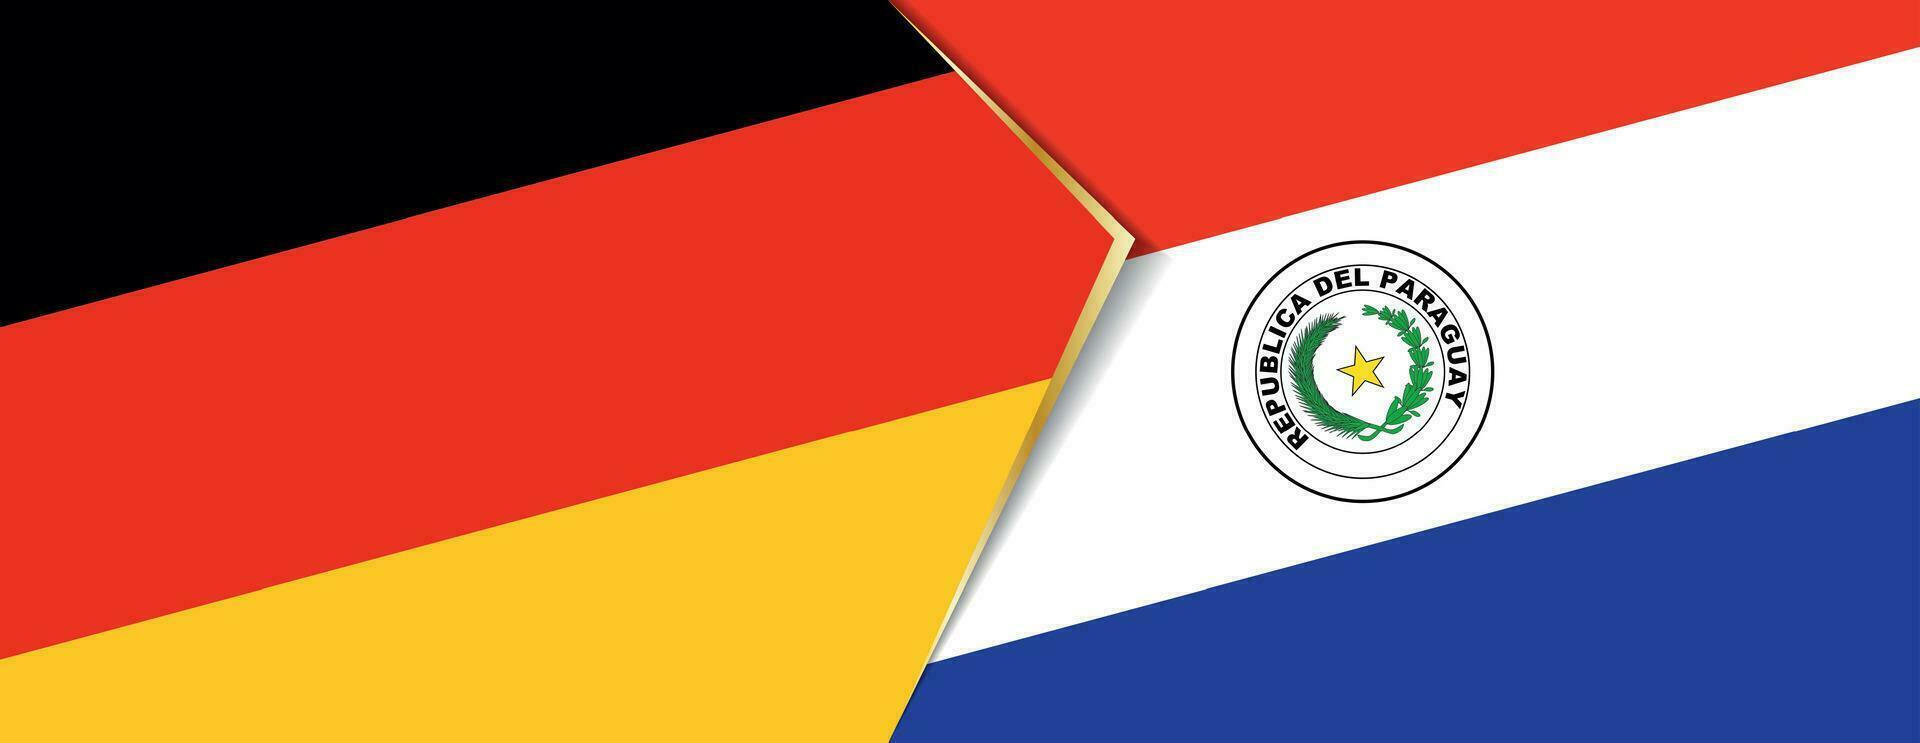 Deutschland und Paraguay Flaggen, zwei Vektor Flaggen.